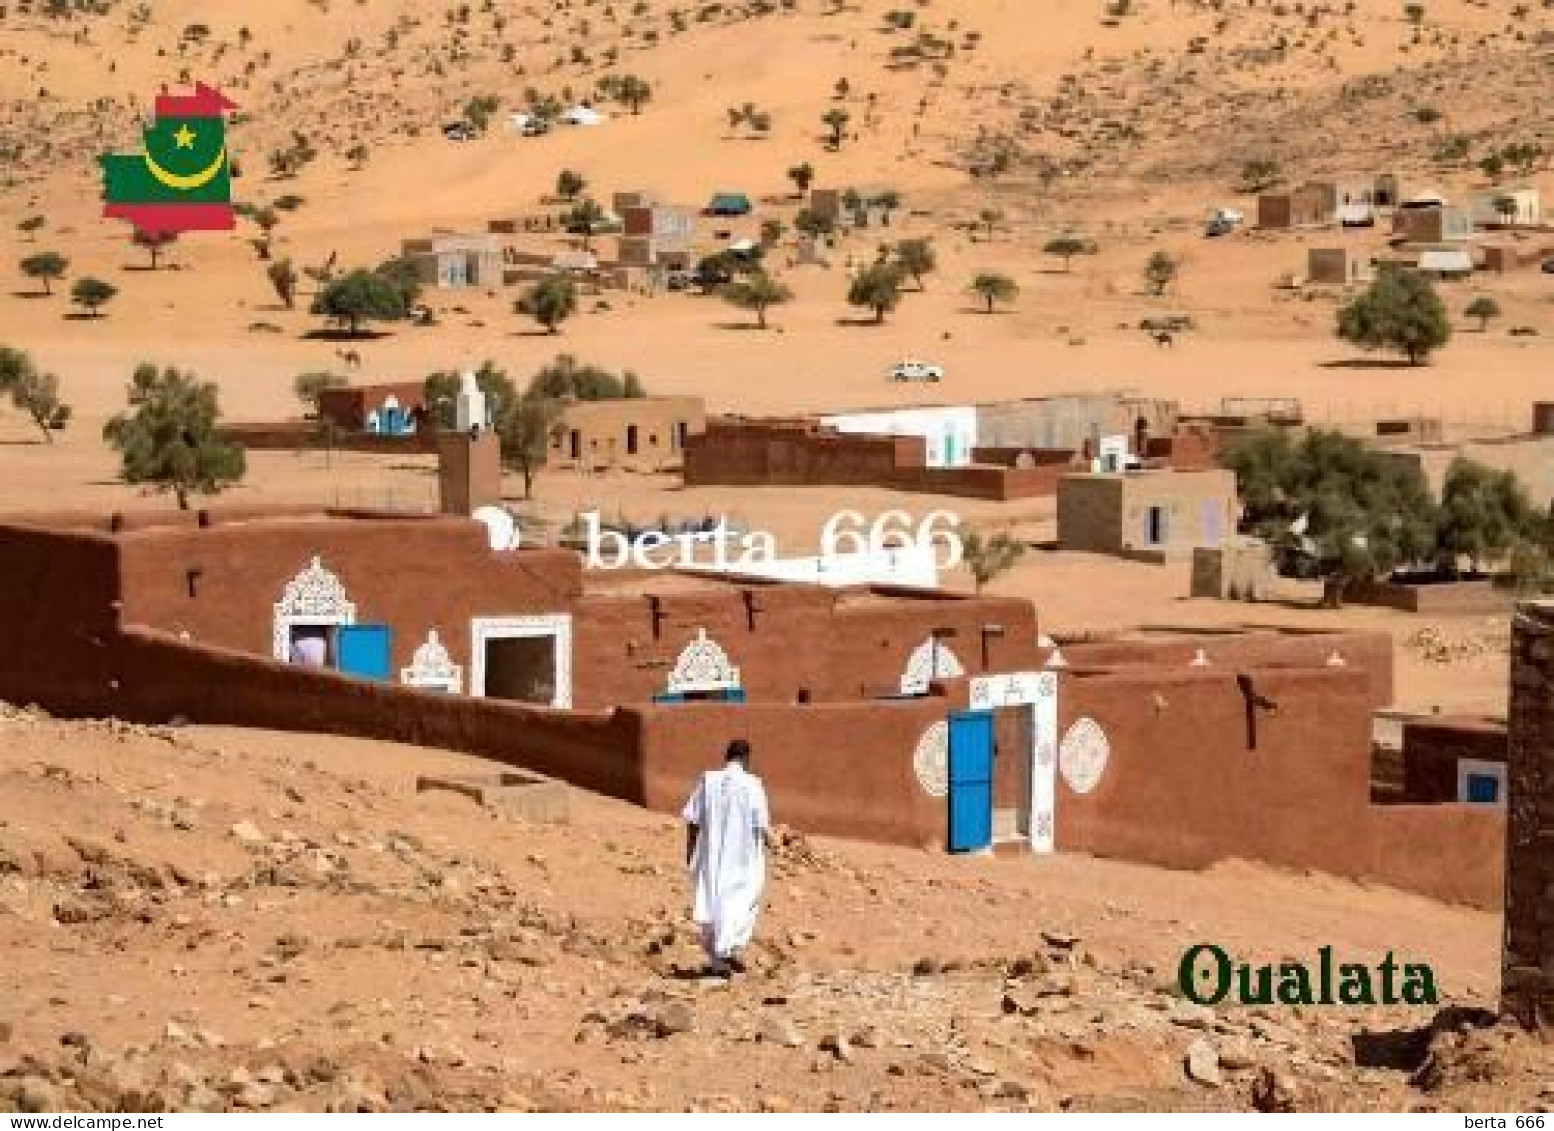 Mauritania Oualata UNESCO New Postcard - Mauretanien